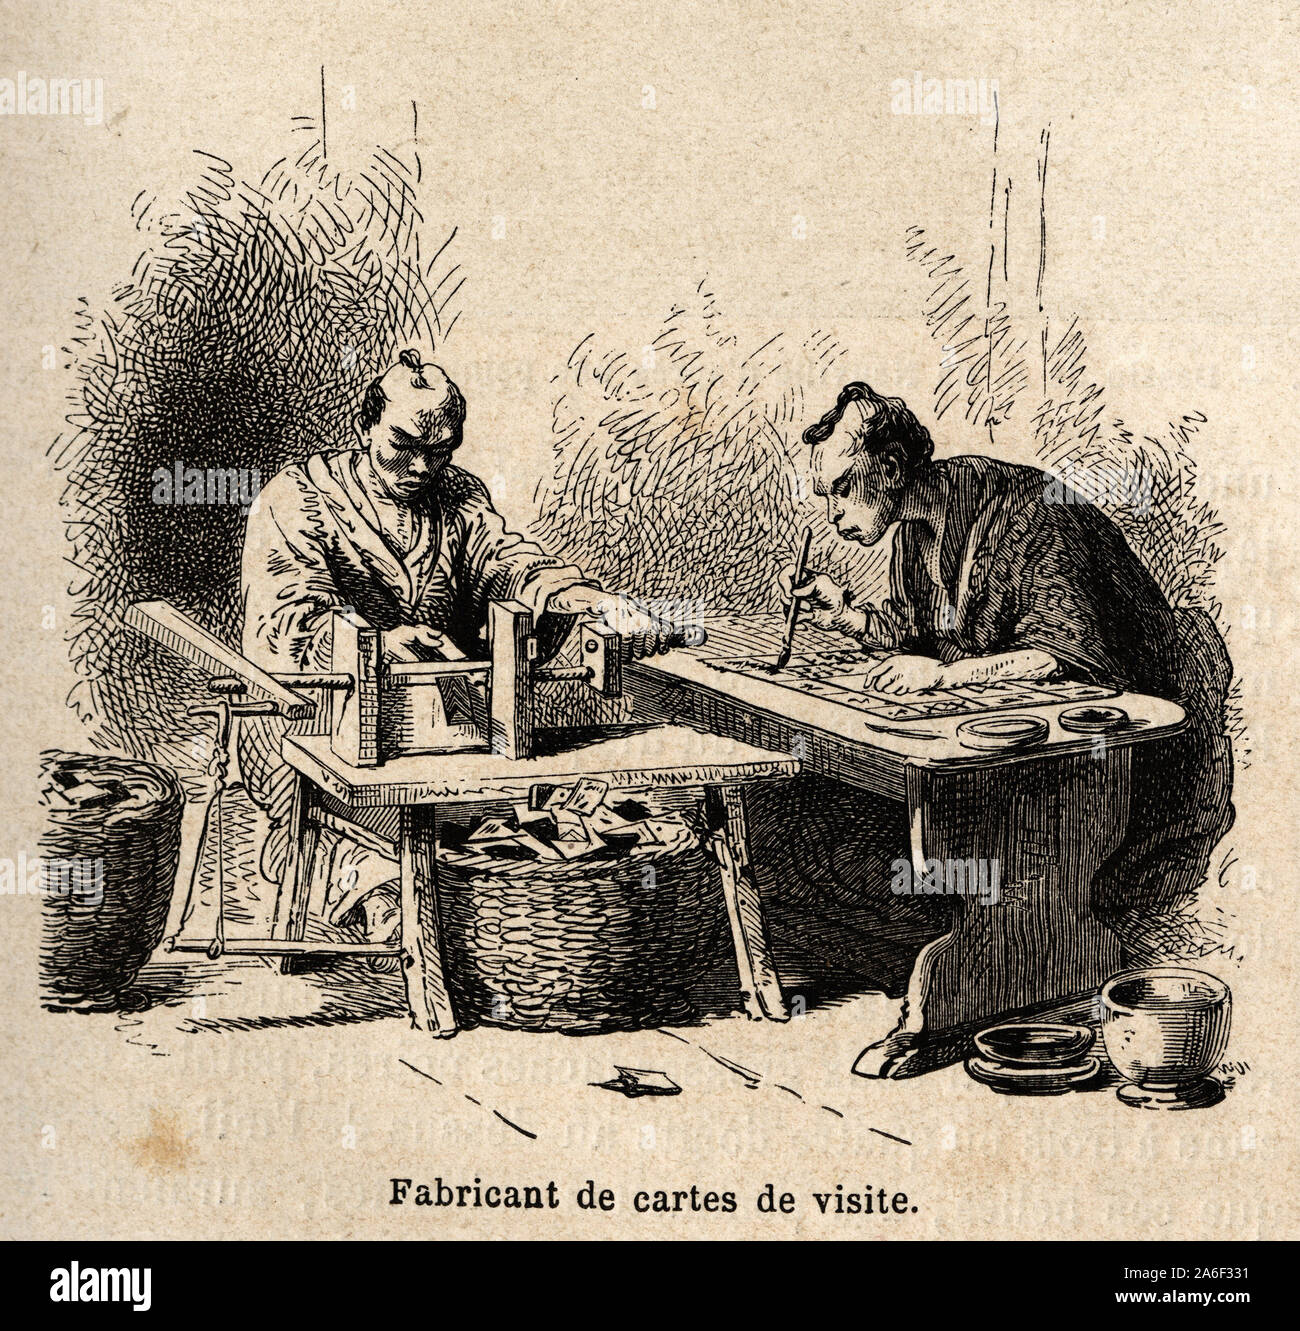 Le fabricant de cartes de visite. Gravure pour illustrer le voyage au Japon en 1863-1864, de Aime Humbert, ministre de la confederation suisse, in 'Le Stock Photo